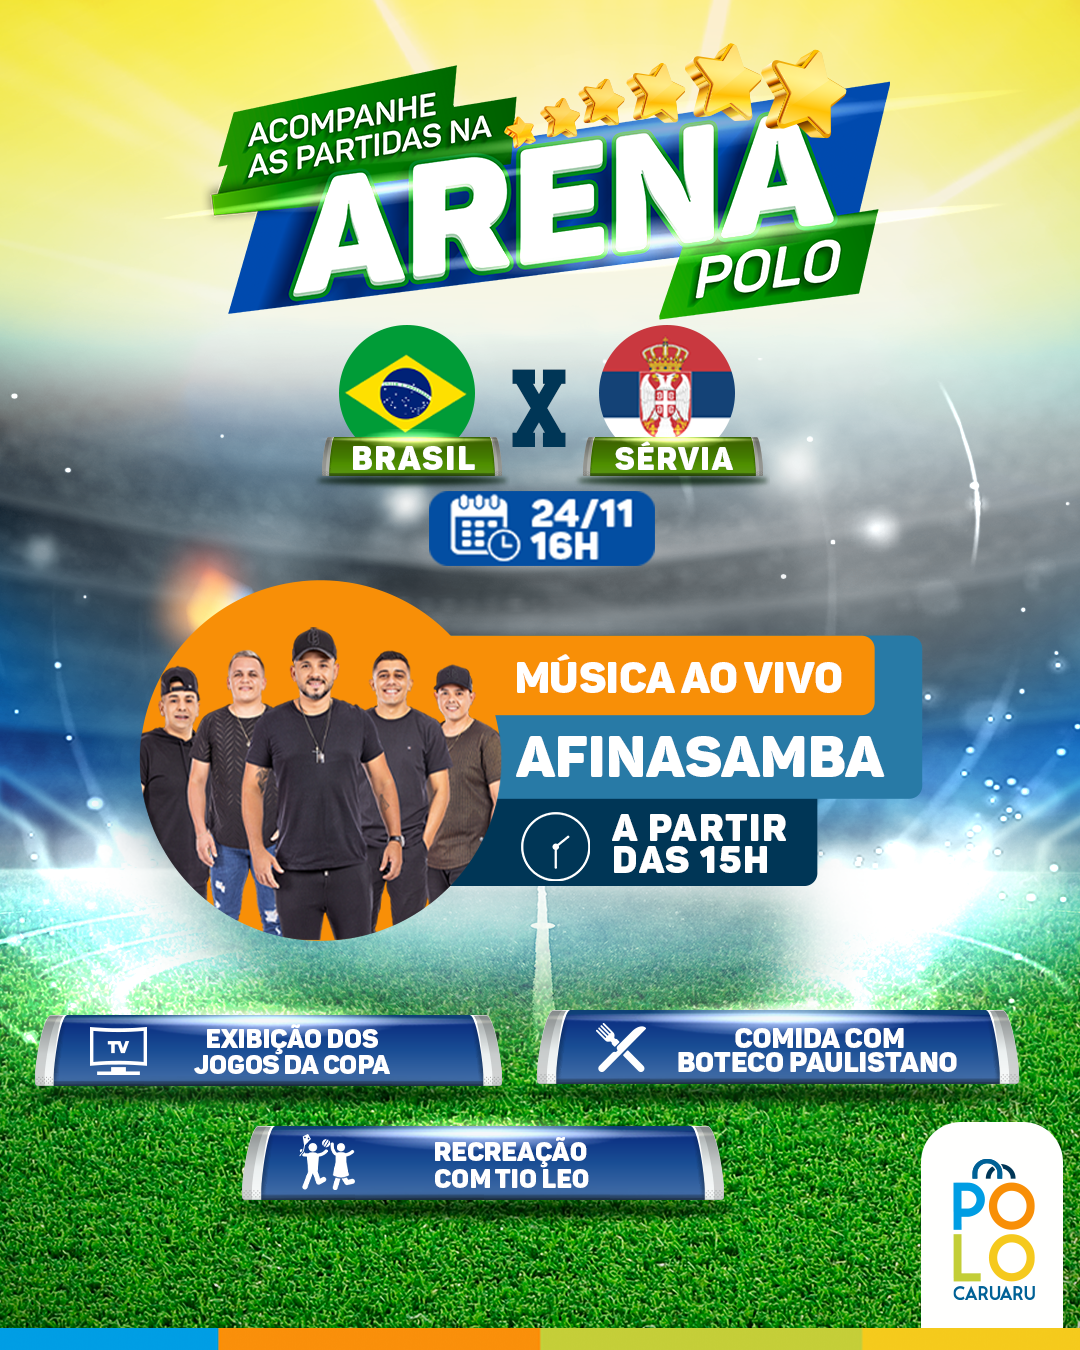 Arena Polo exibe jogo do Brasil com música ao vivo antes da partida - POLO  CARUARU